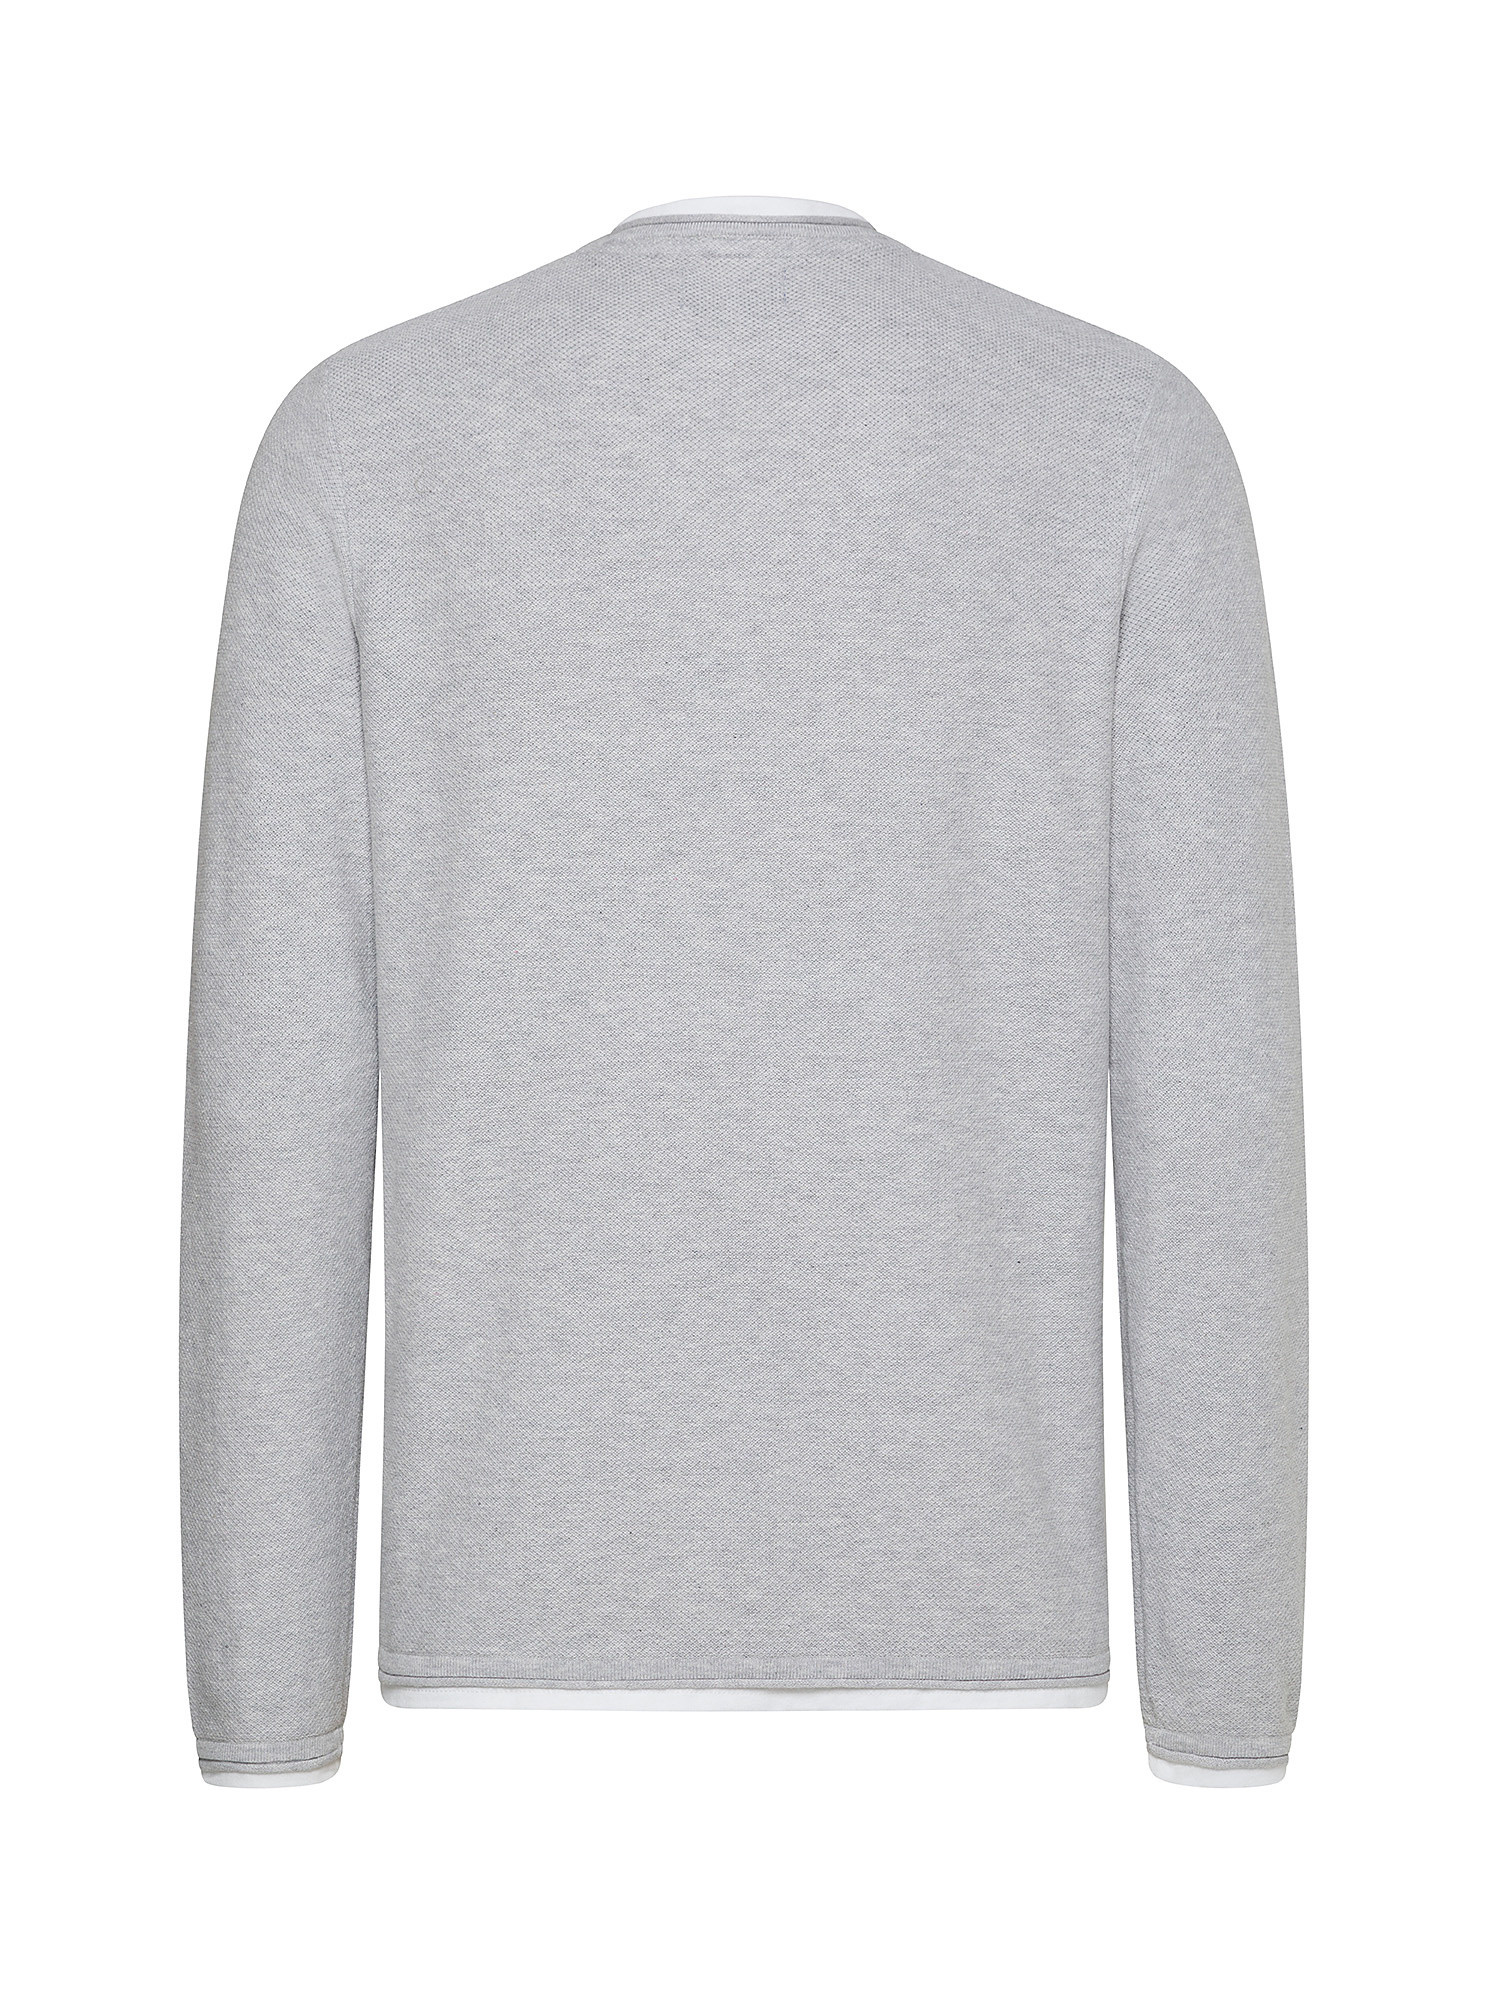 Jack & Jones - Cotton pullover, Light Grey, large image number 1